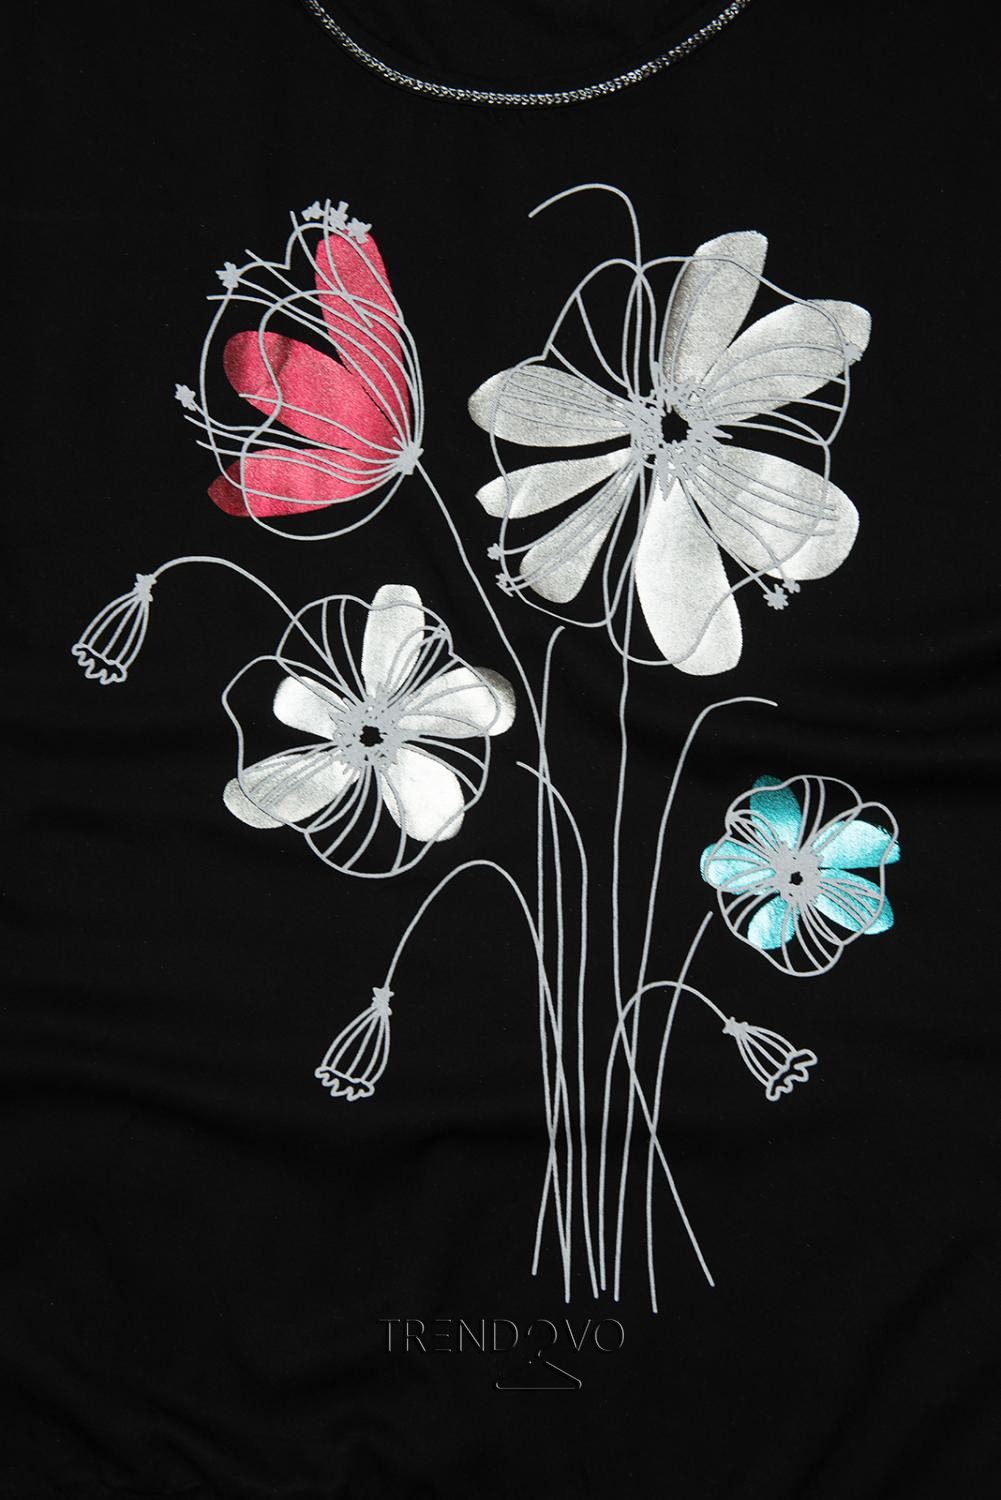 Čierne tričko s potlačou kvetov